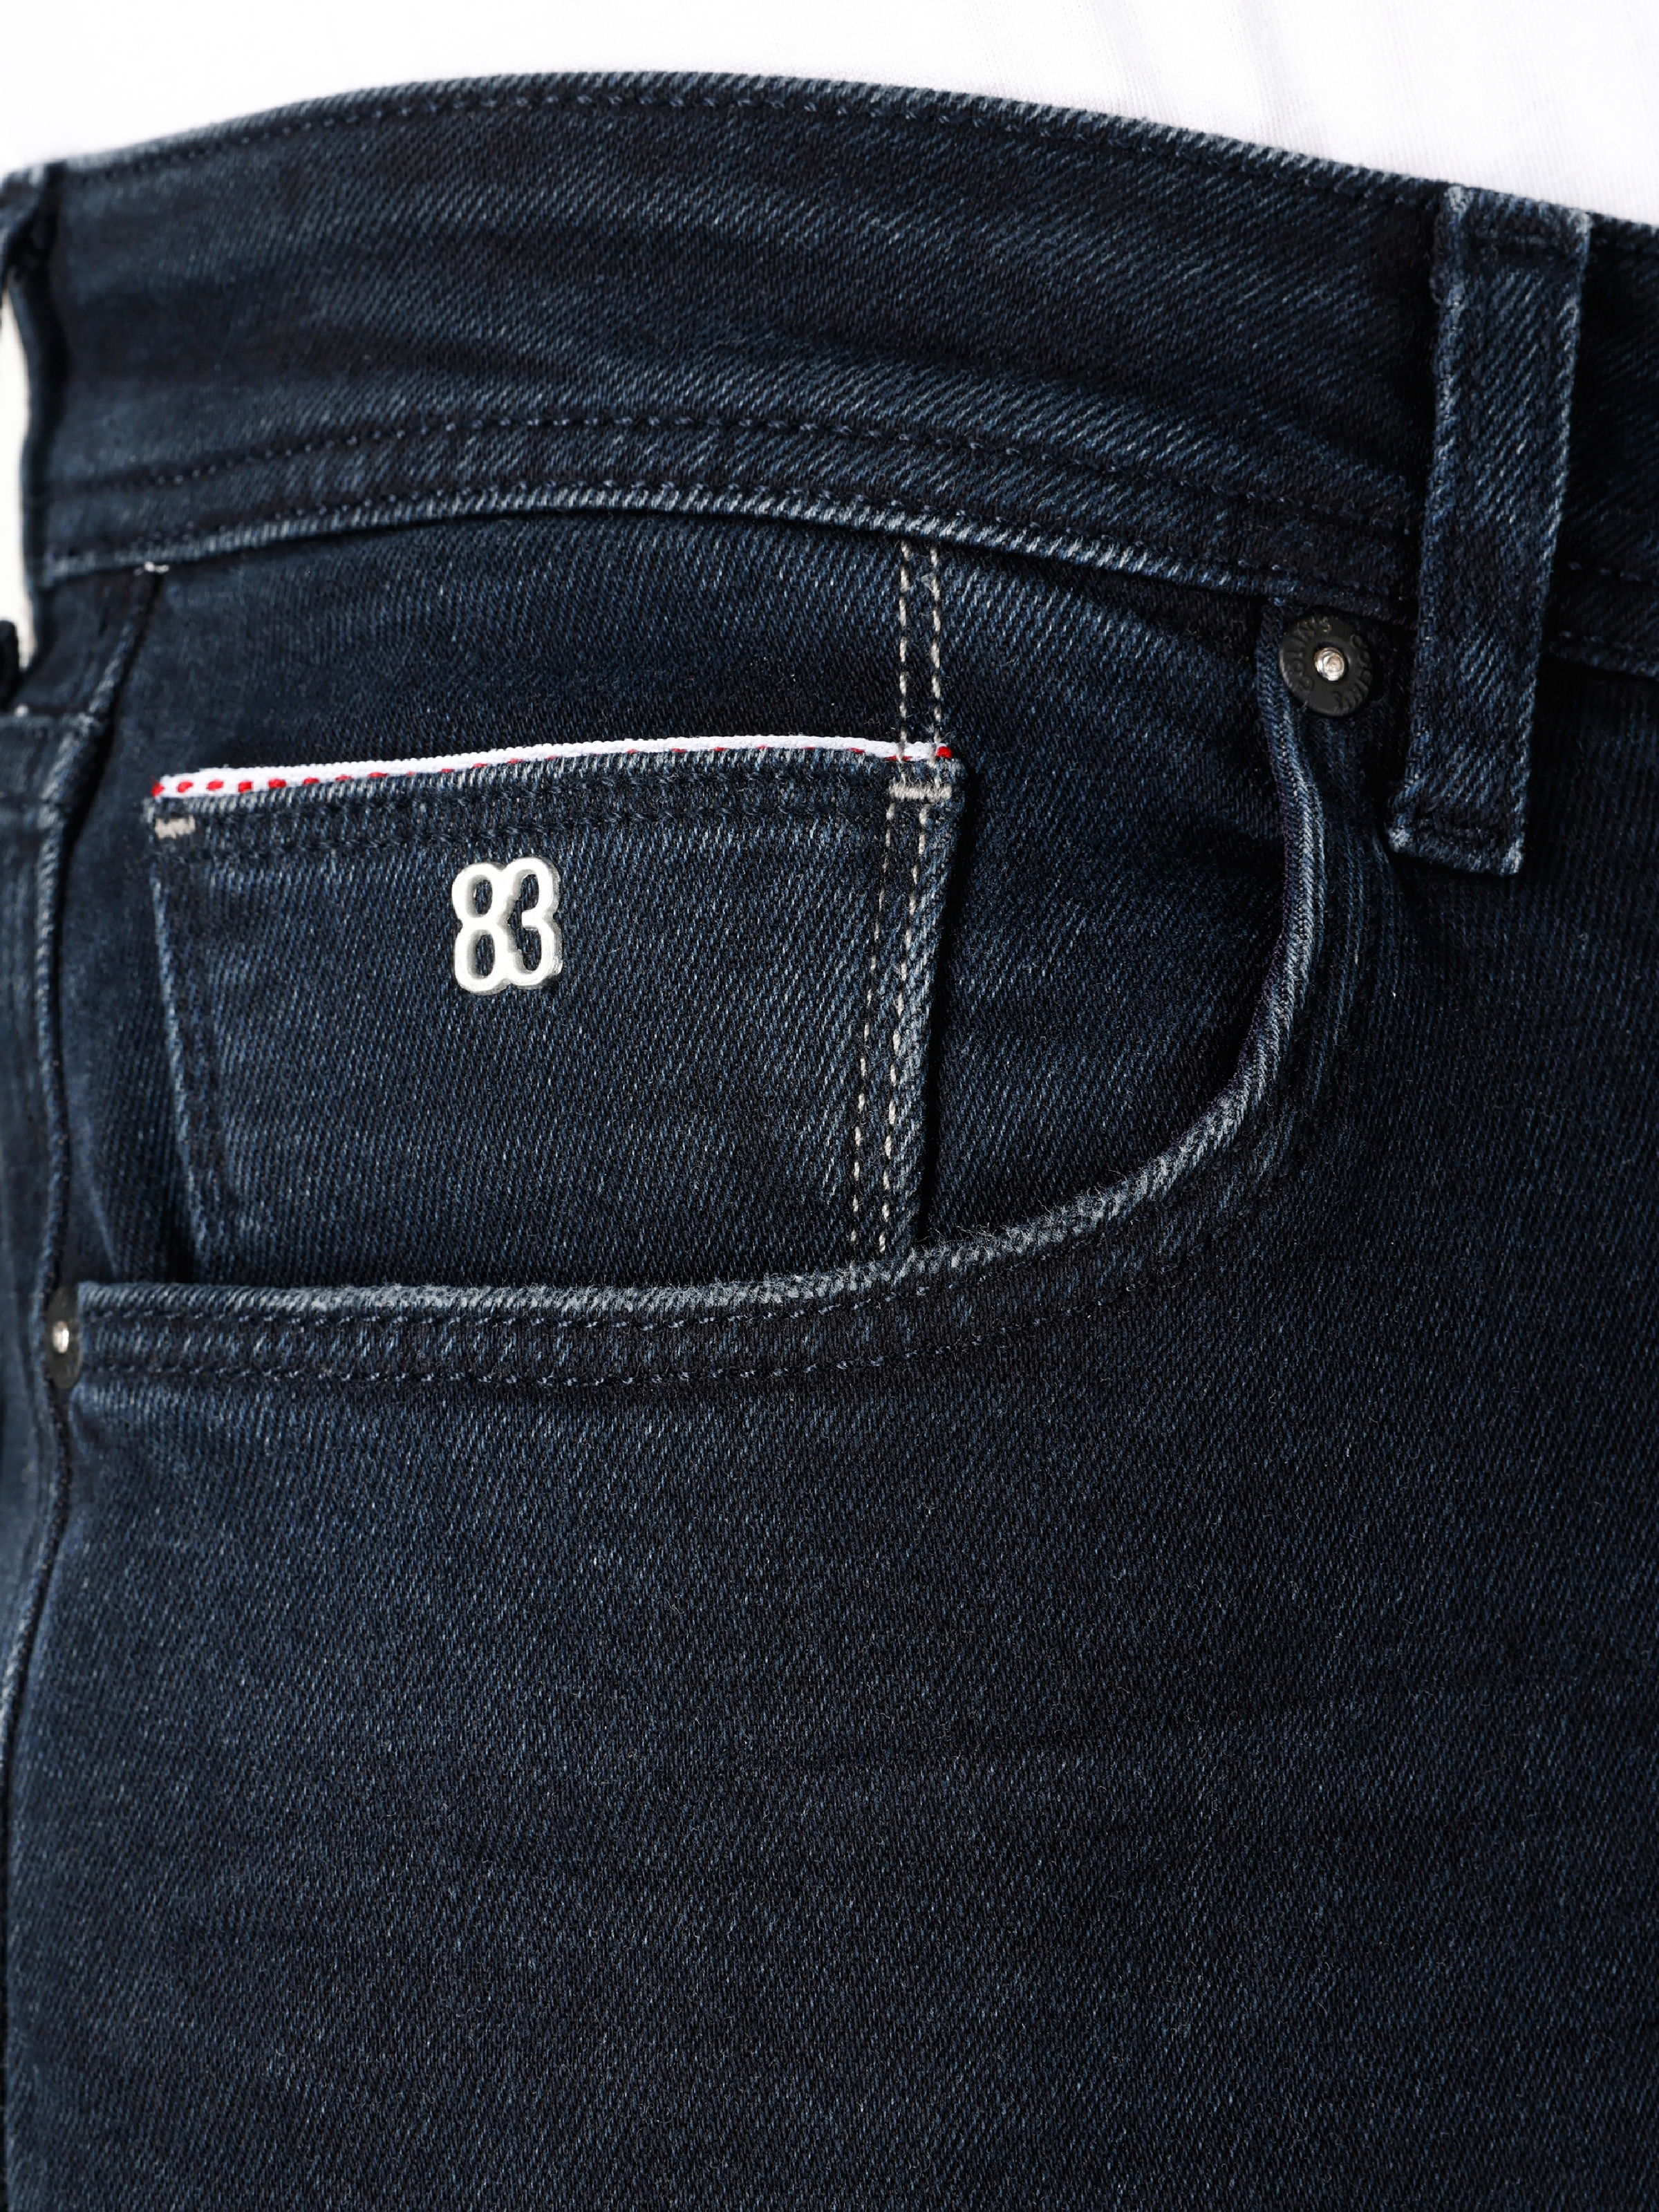 اعرض التفاصيل لـ 067 جاك بنطال جينز رجالي ذو قصة مستقيمة